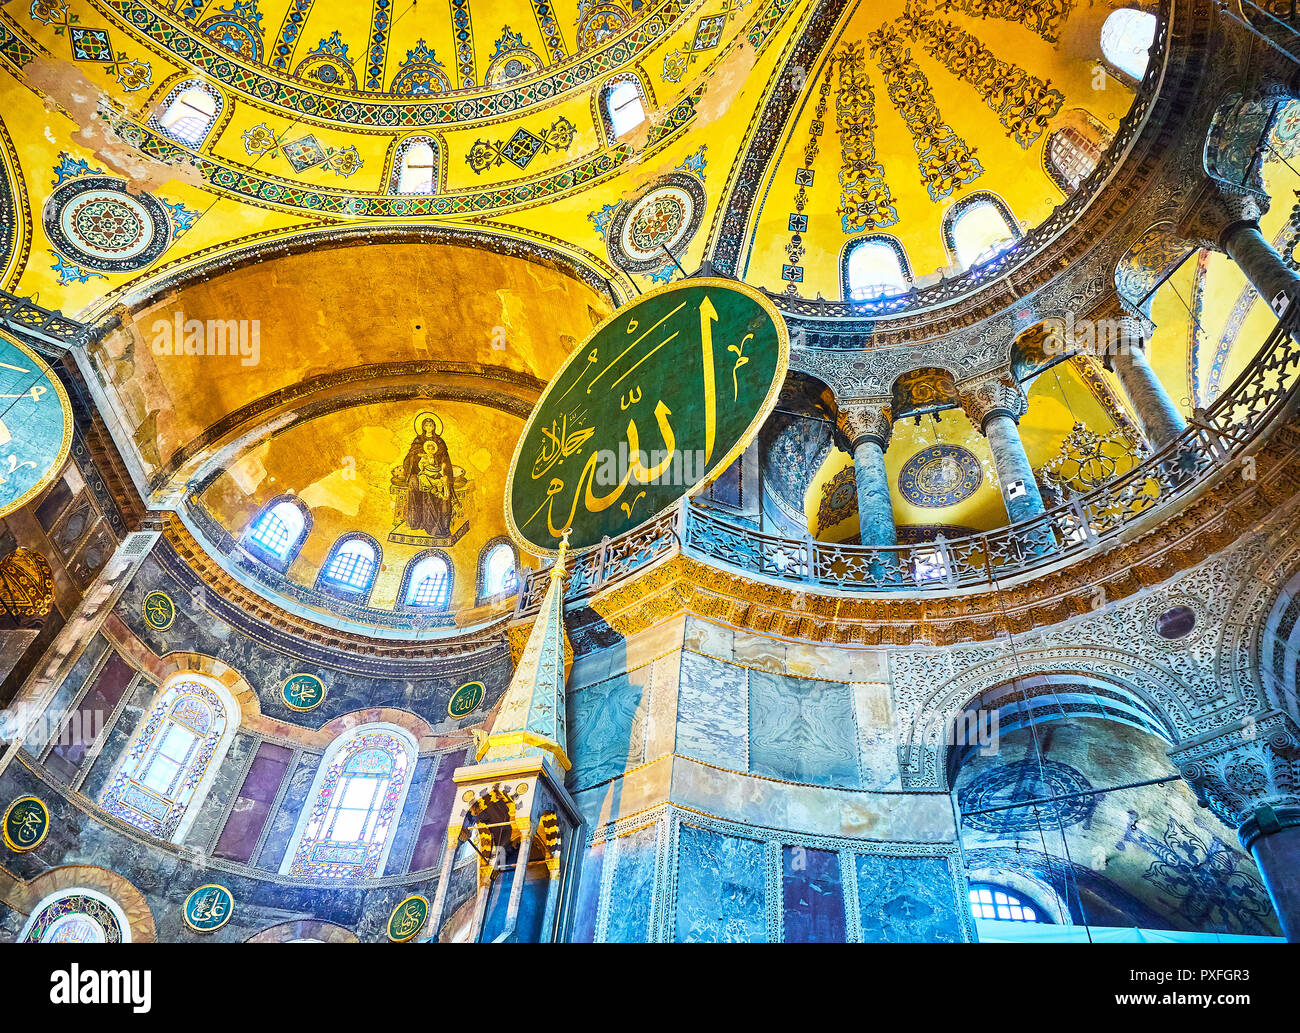 Minbar, il pulpito a destra dell'altare di Hagia Sophia, la moschea e la zona absidale con il mosaico della Vergine Maria in background. Istanbul Foto Stock